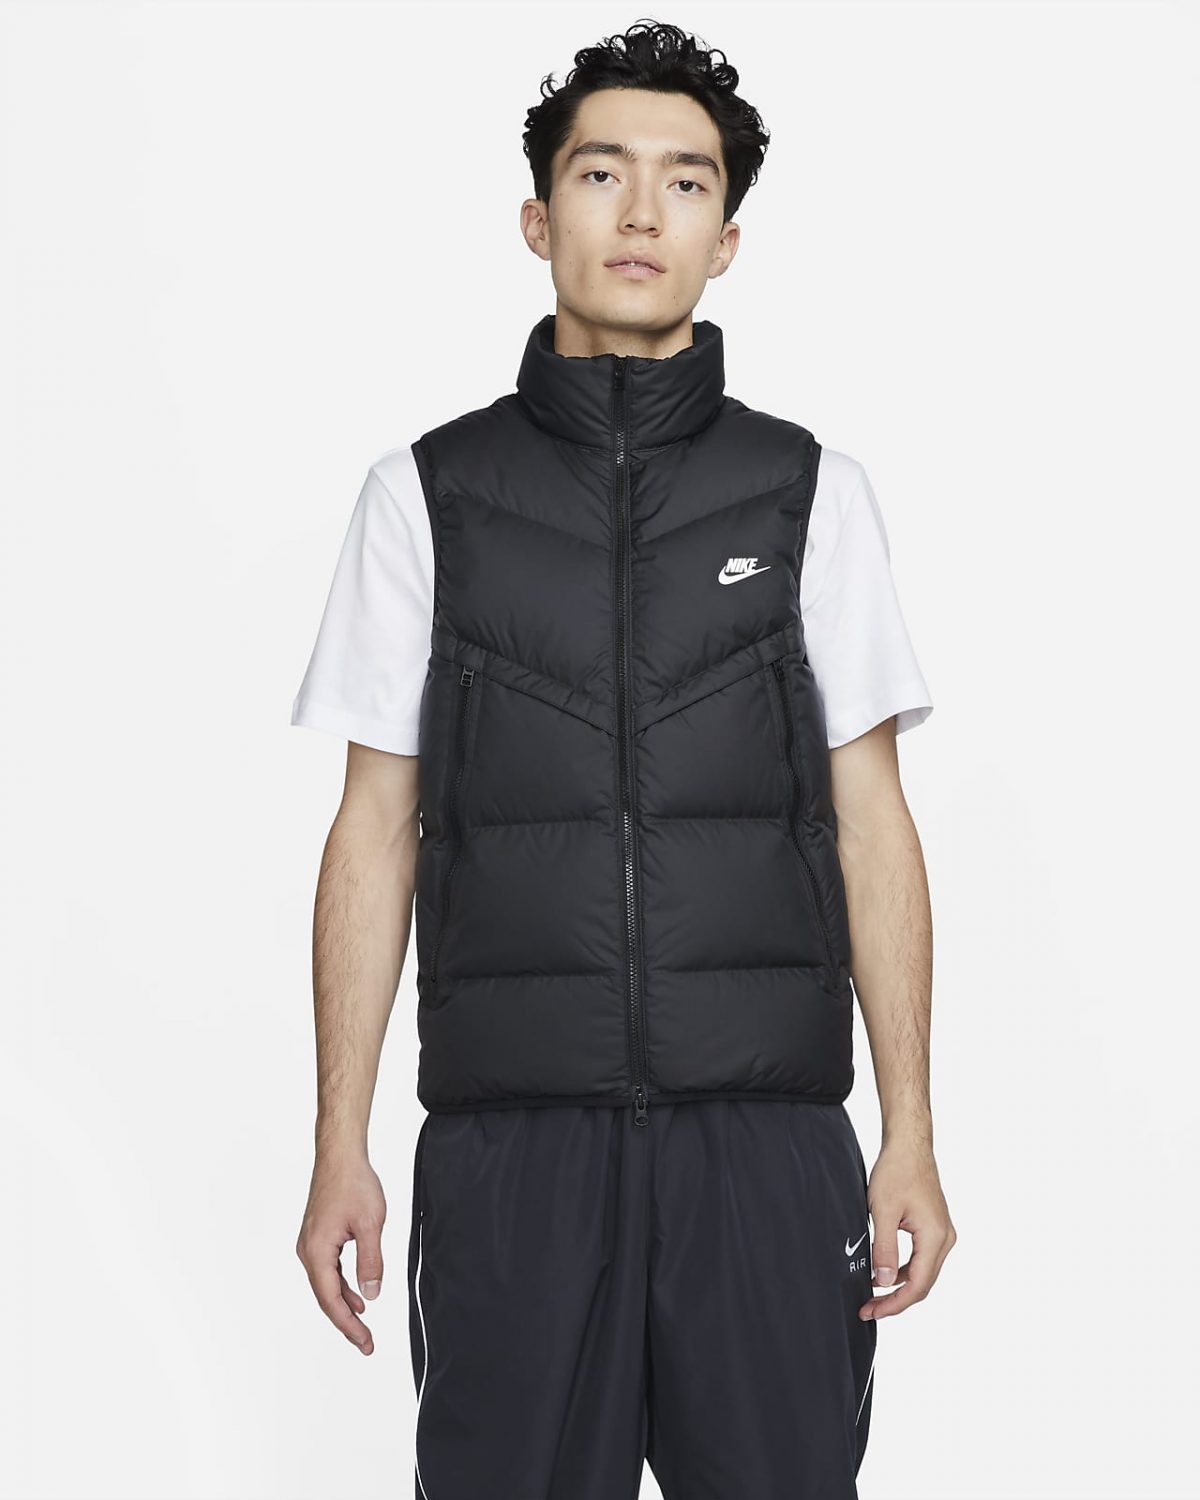 Мужская спортивная одежда Nike Storm-FIT Windrunner фото